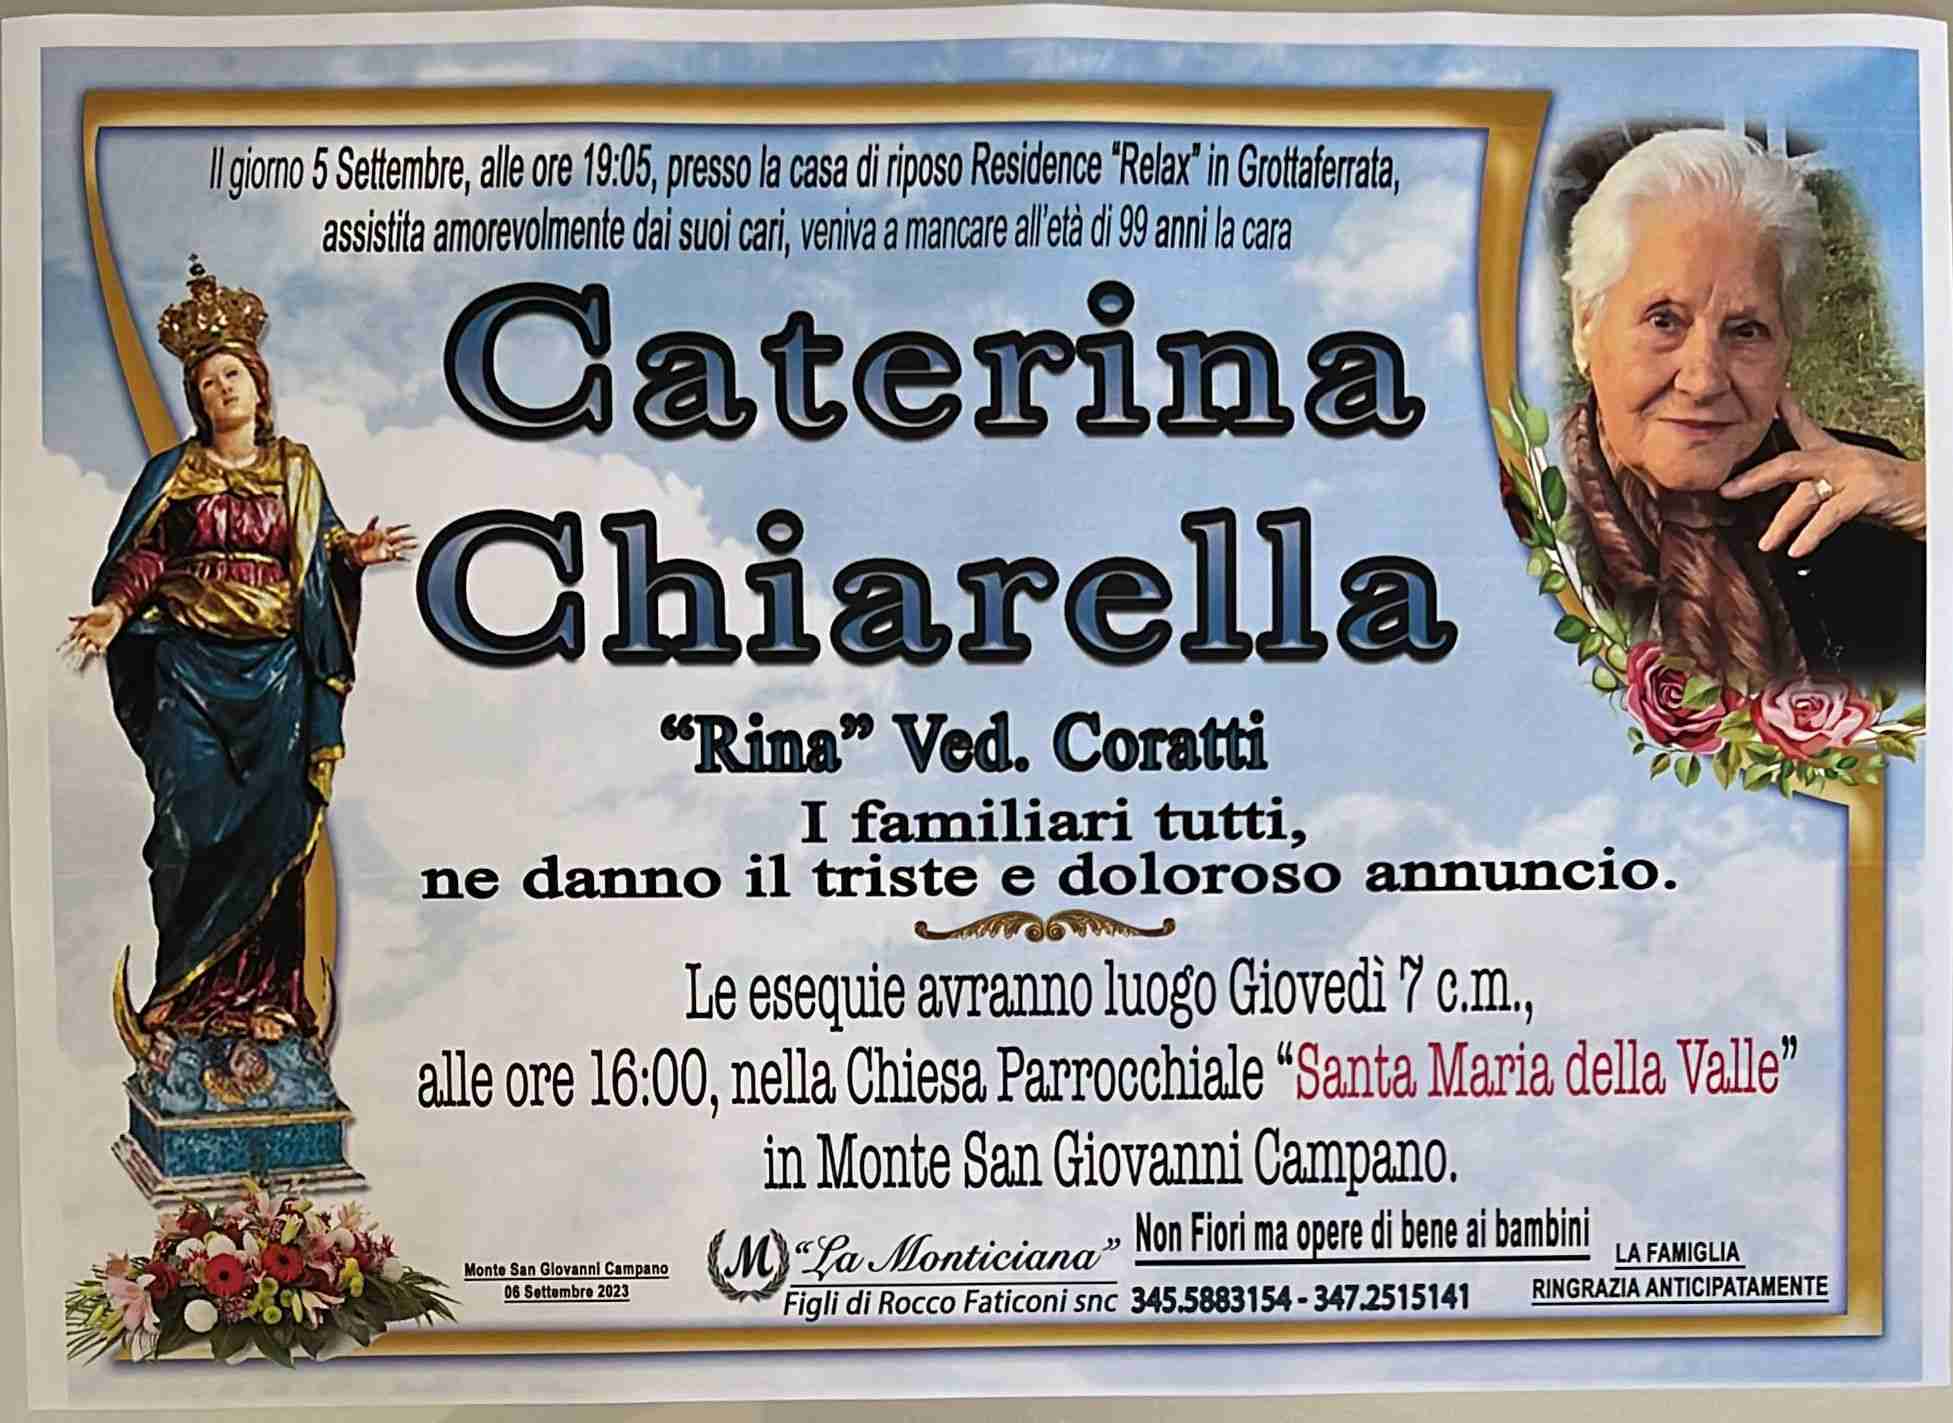 Caterina Chiarella